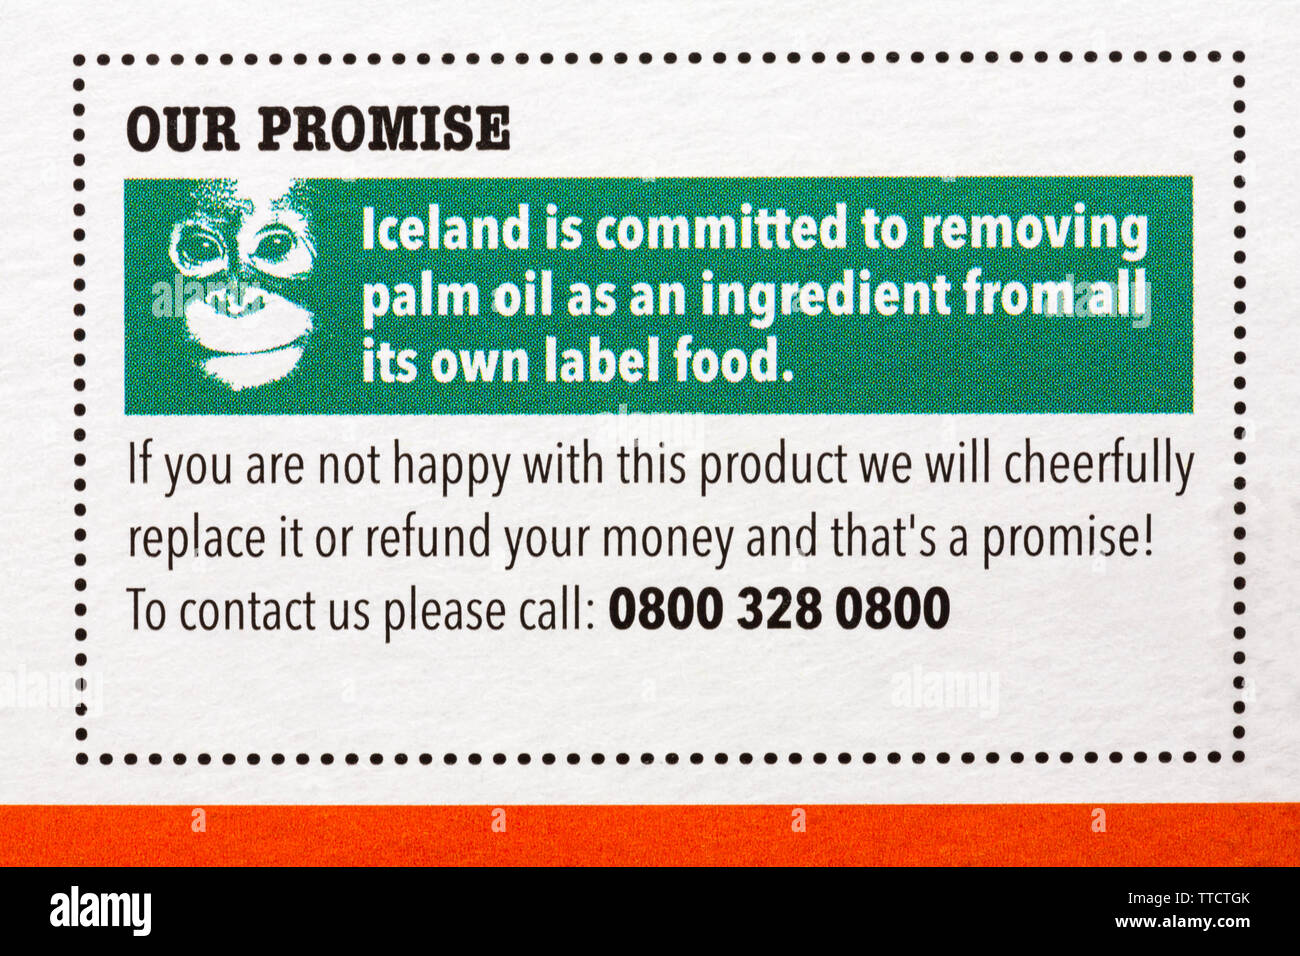 L'Islanda è impegnata per la rimozione di olio di palma come ingrediente da tutta la sua propria etichetta alimentare - promessa sulla scatola di Islanda Toffee & vaniglia 6 coni gelati Foto Stock